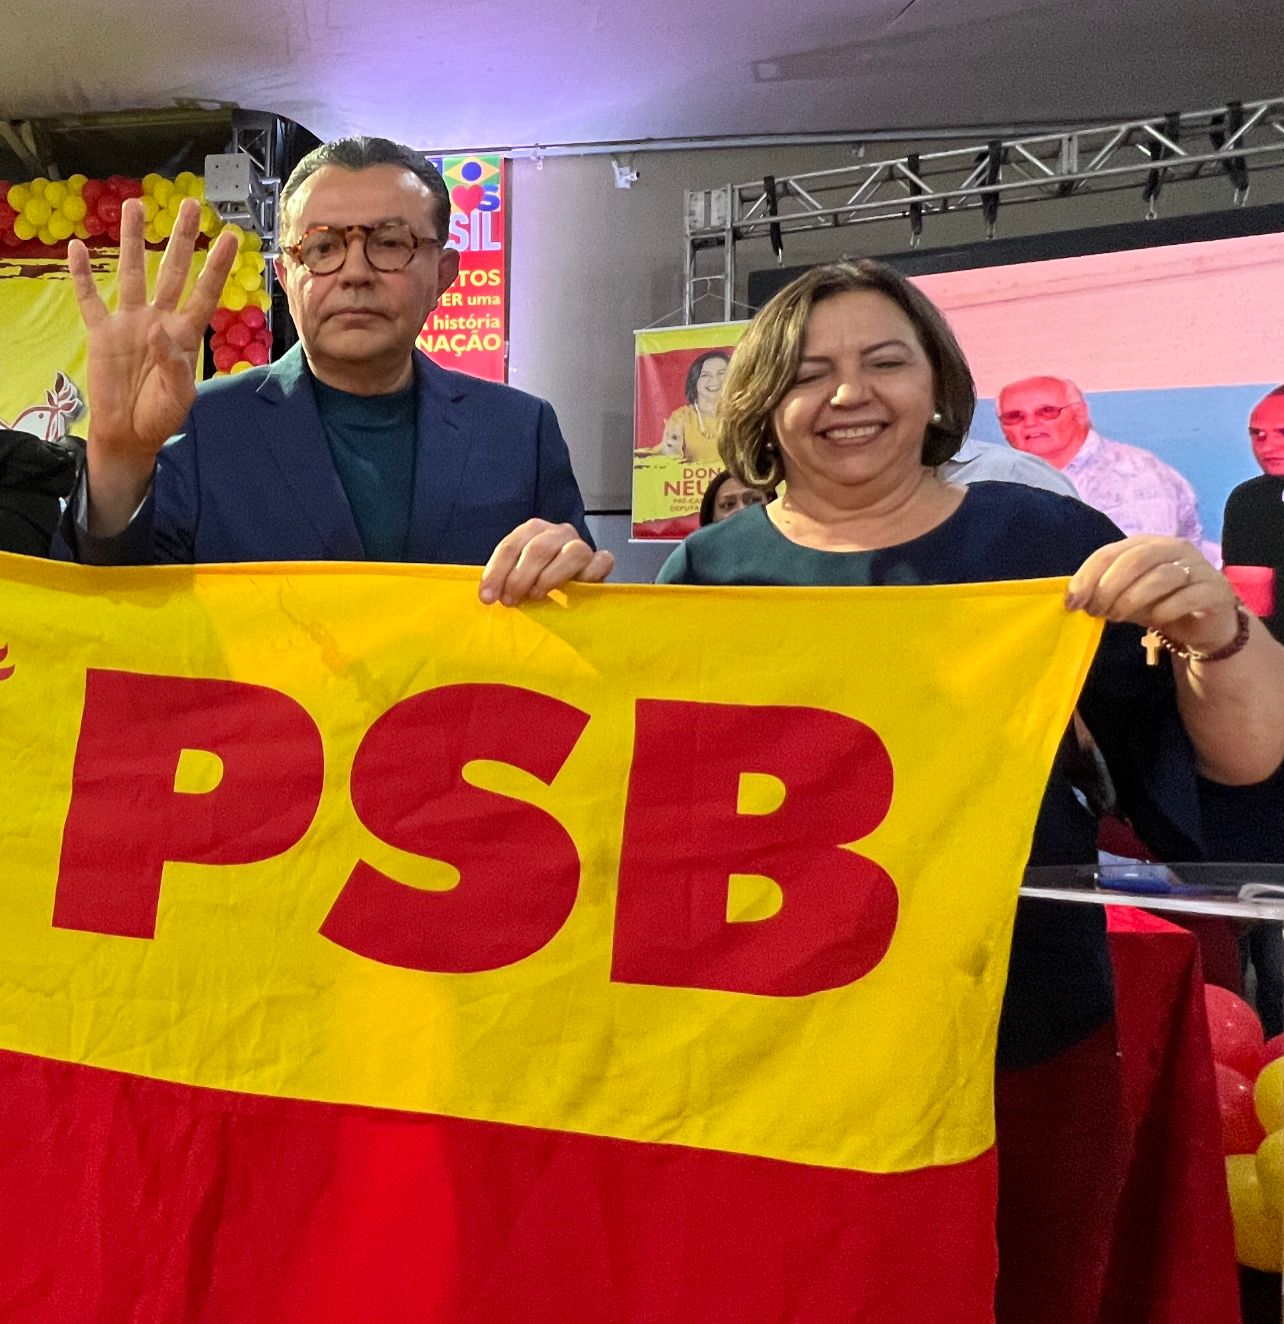 PSB ganha “musculatura” com centenas de filiações em mega ato político em Rondonópolis